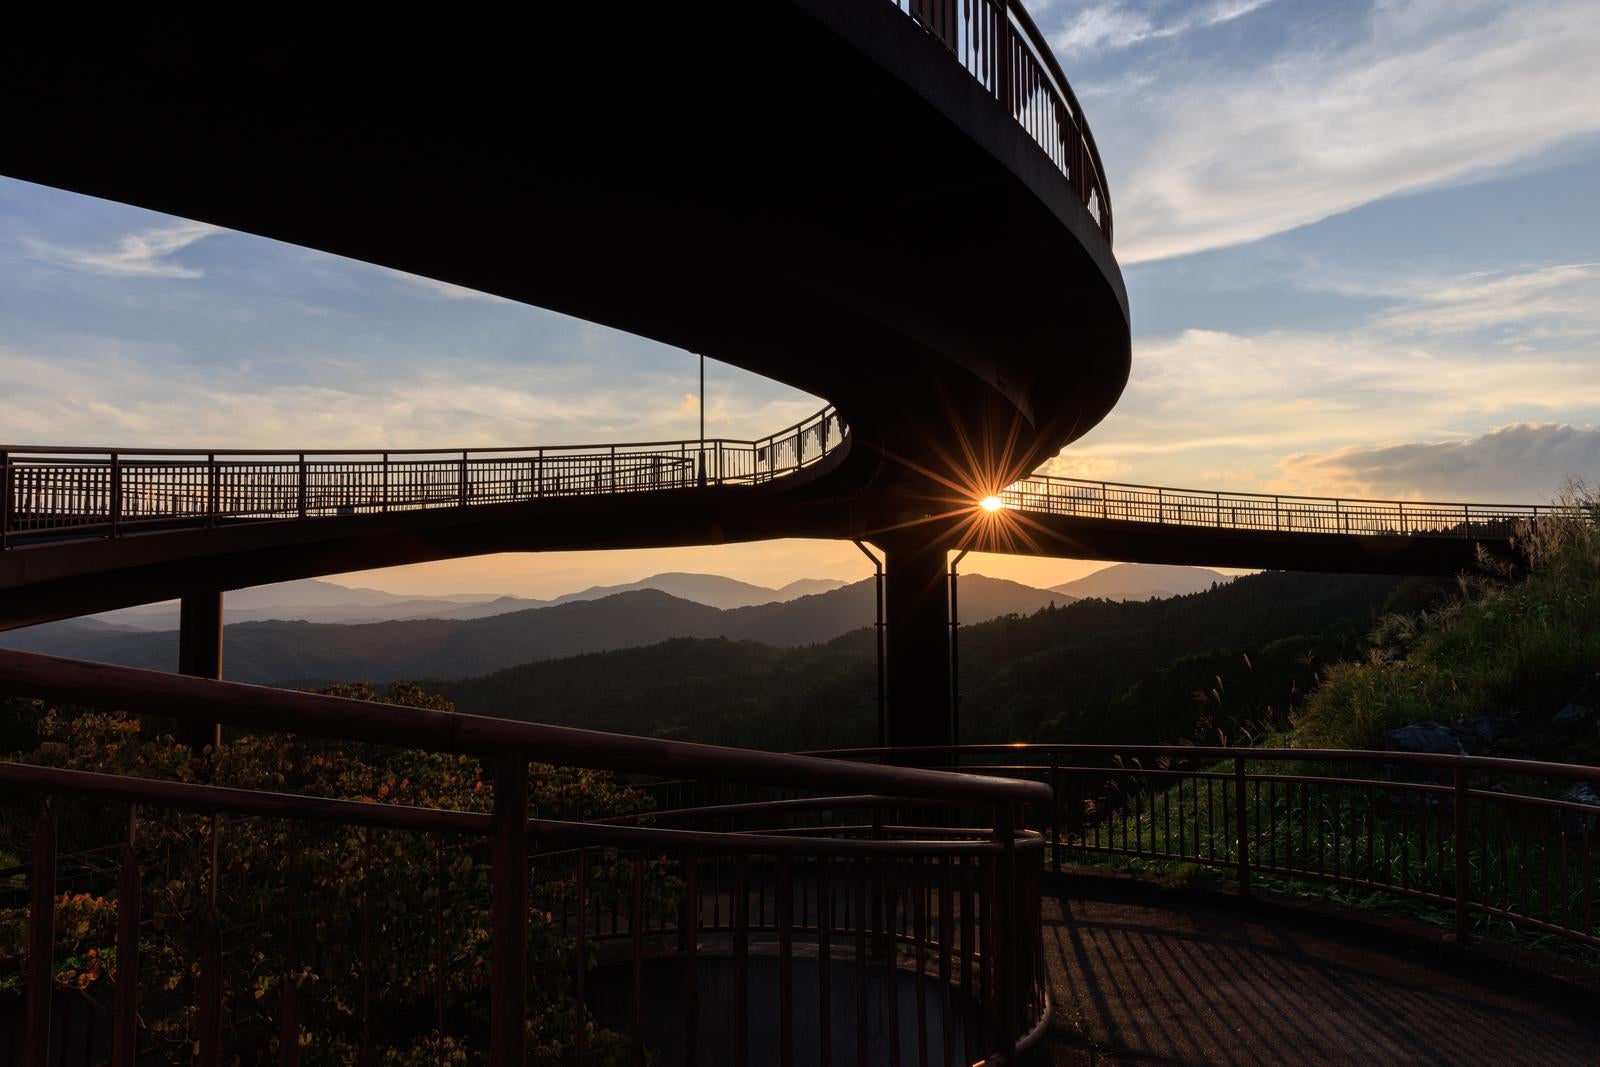 「田村市の夕日と天地人橋のシルエット」の写真